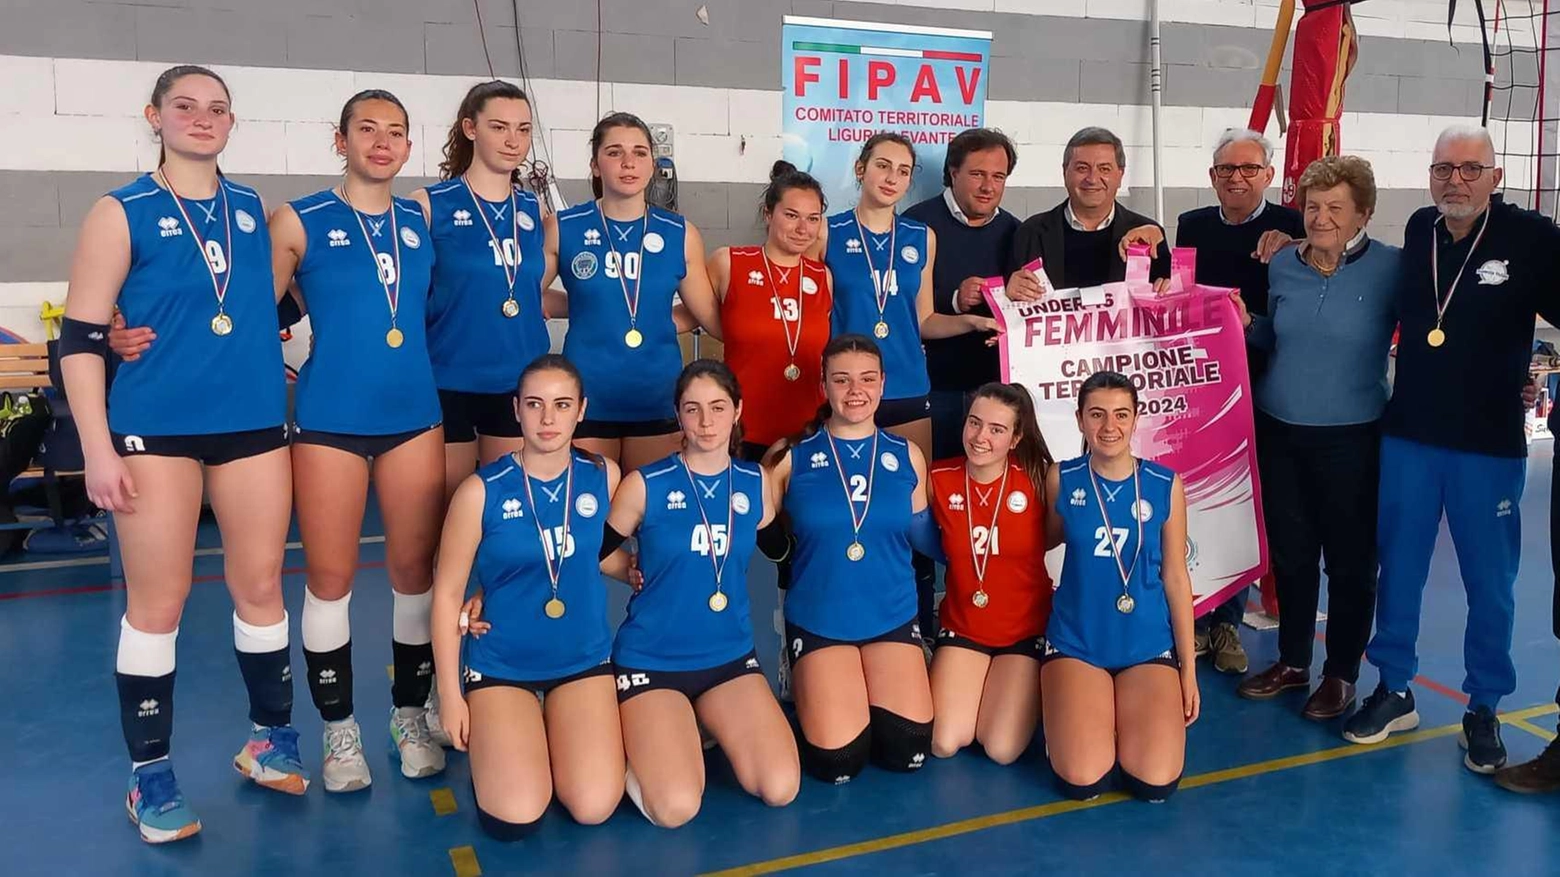 Il Lunezia Volley di Sarzana trionfa nell'Under 16 femminile, battendo l'Amis Chiavari e conquistando il titolo territoriale. La squadra si prepara ora per la fase regionale, guidata da coach Menconi e con talenti come Giangreco e Montemagni.